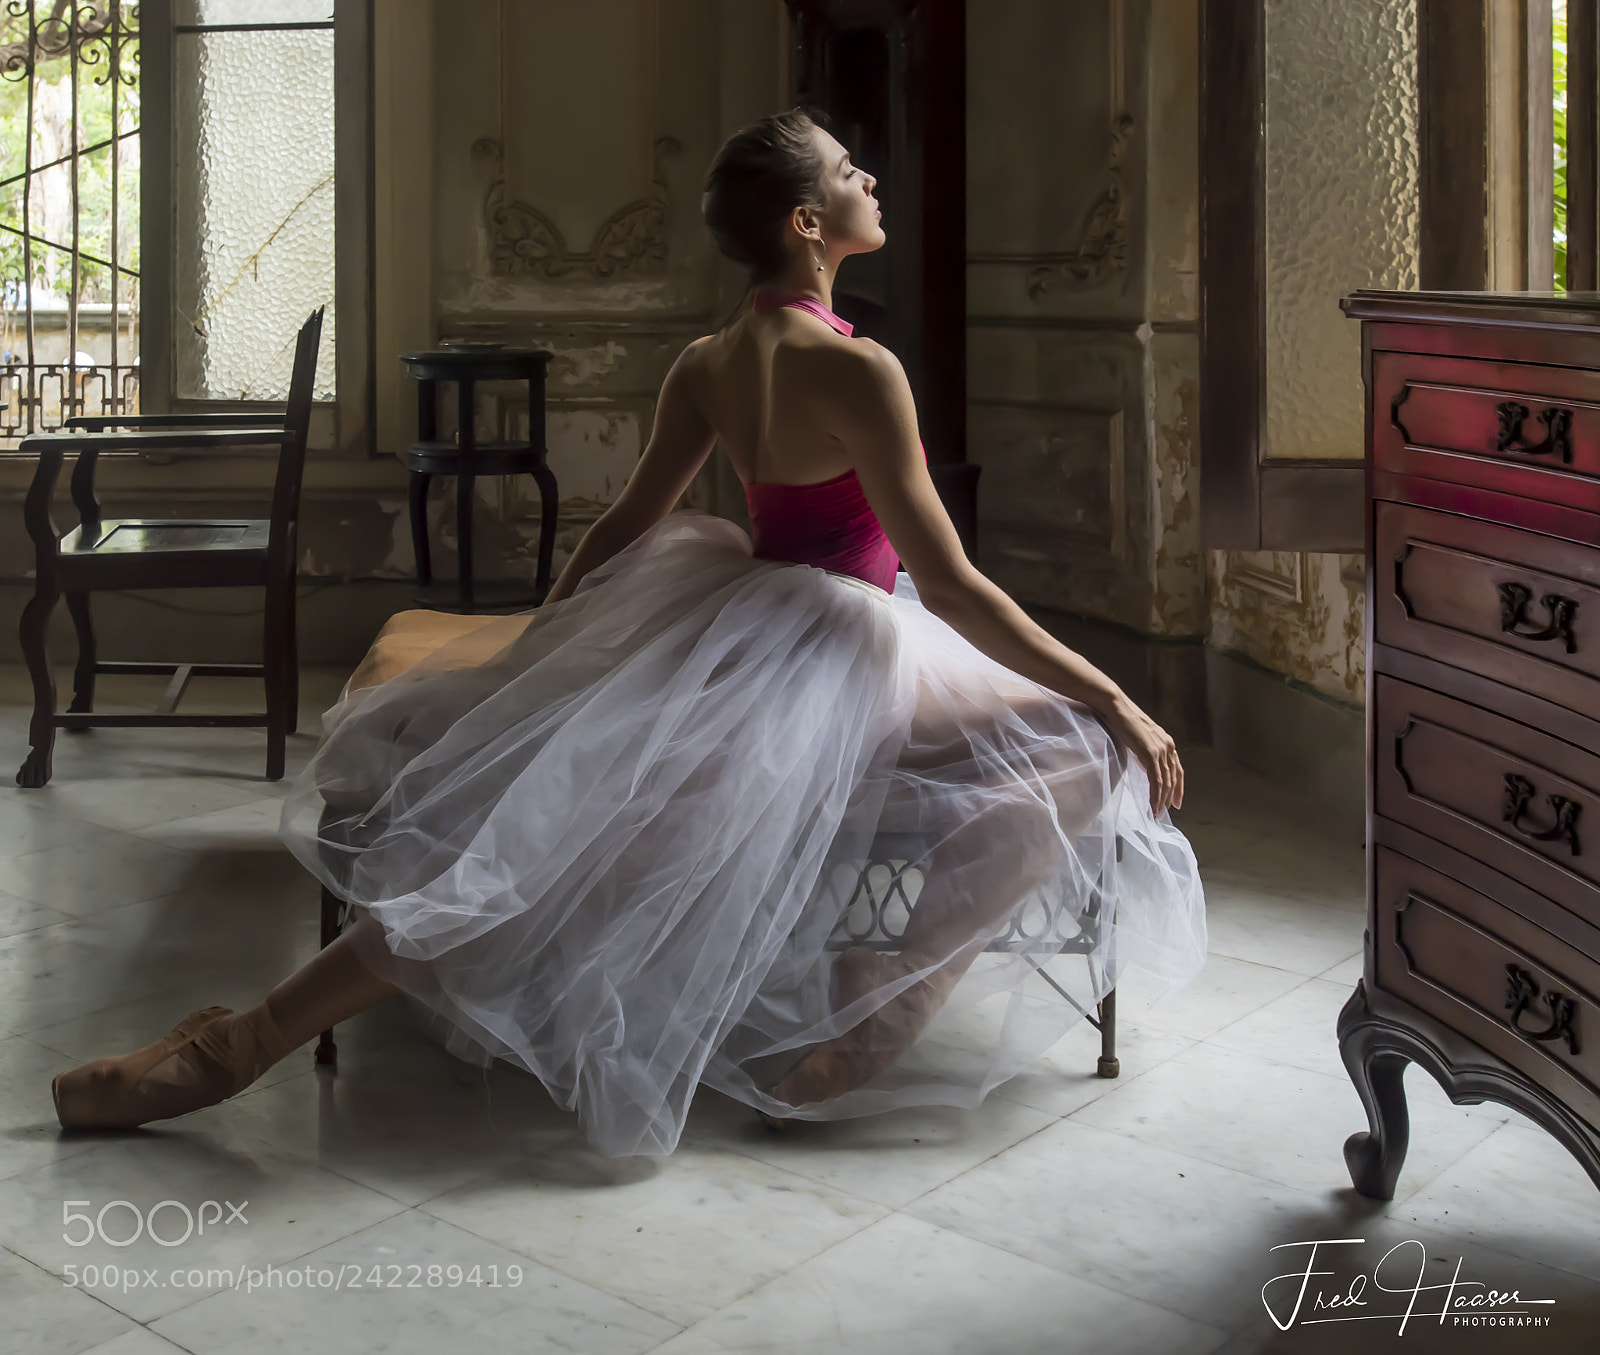 Nikon D5 sample photo. Cuban ballerinas in the photography